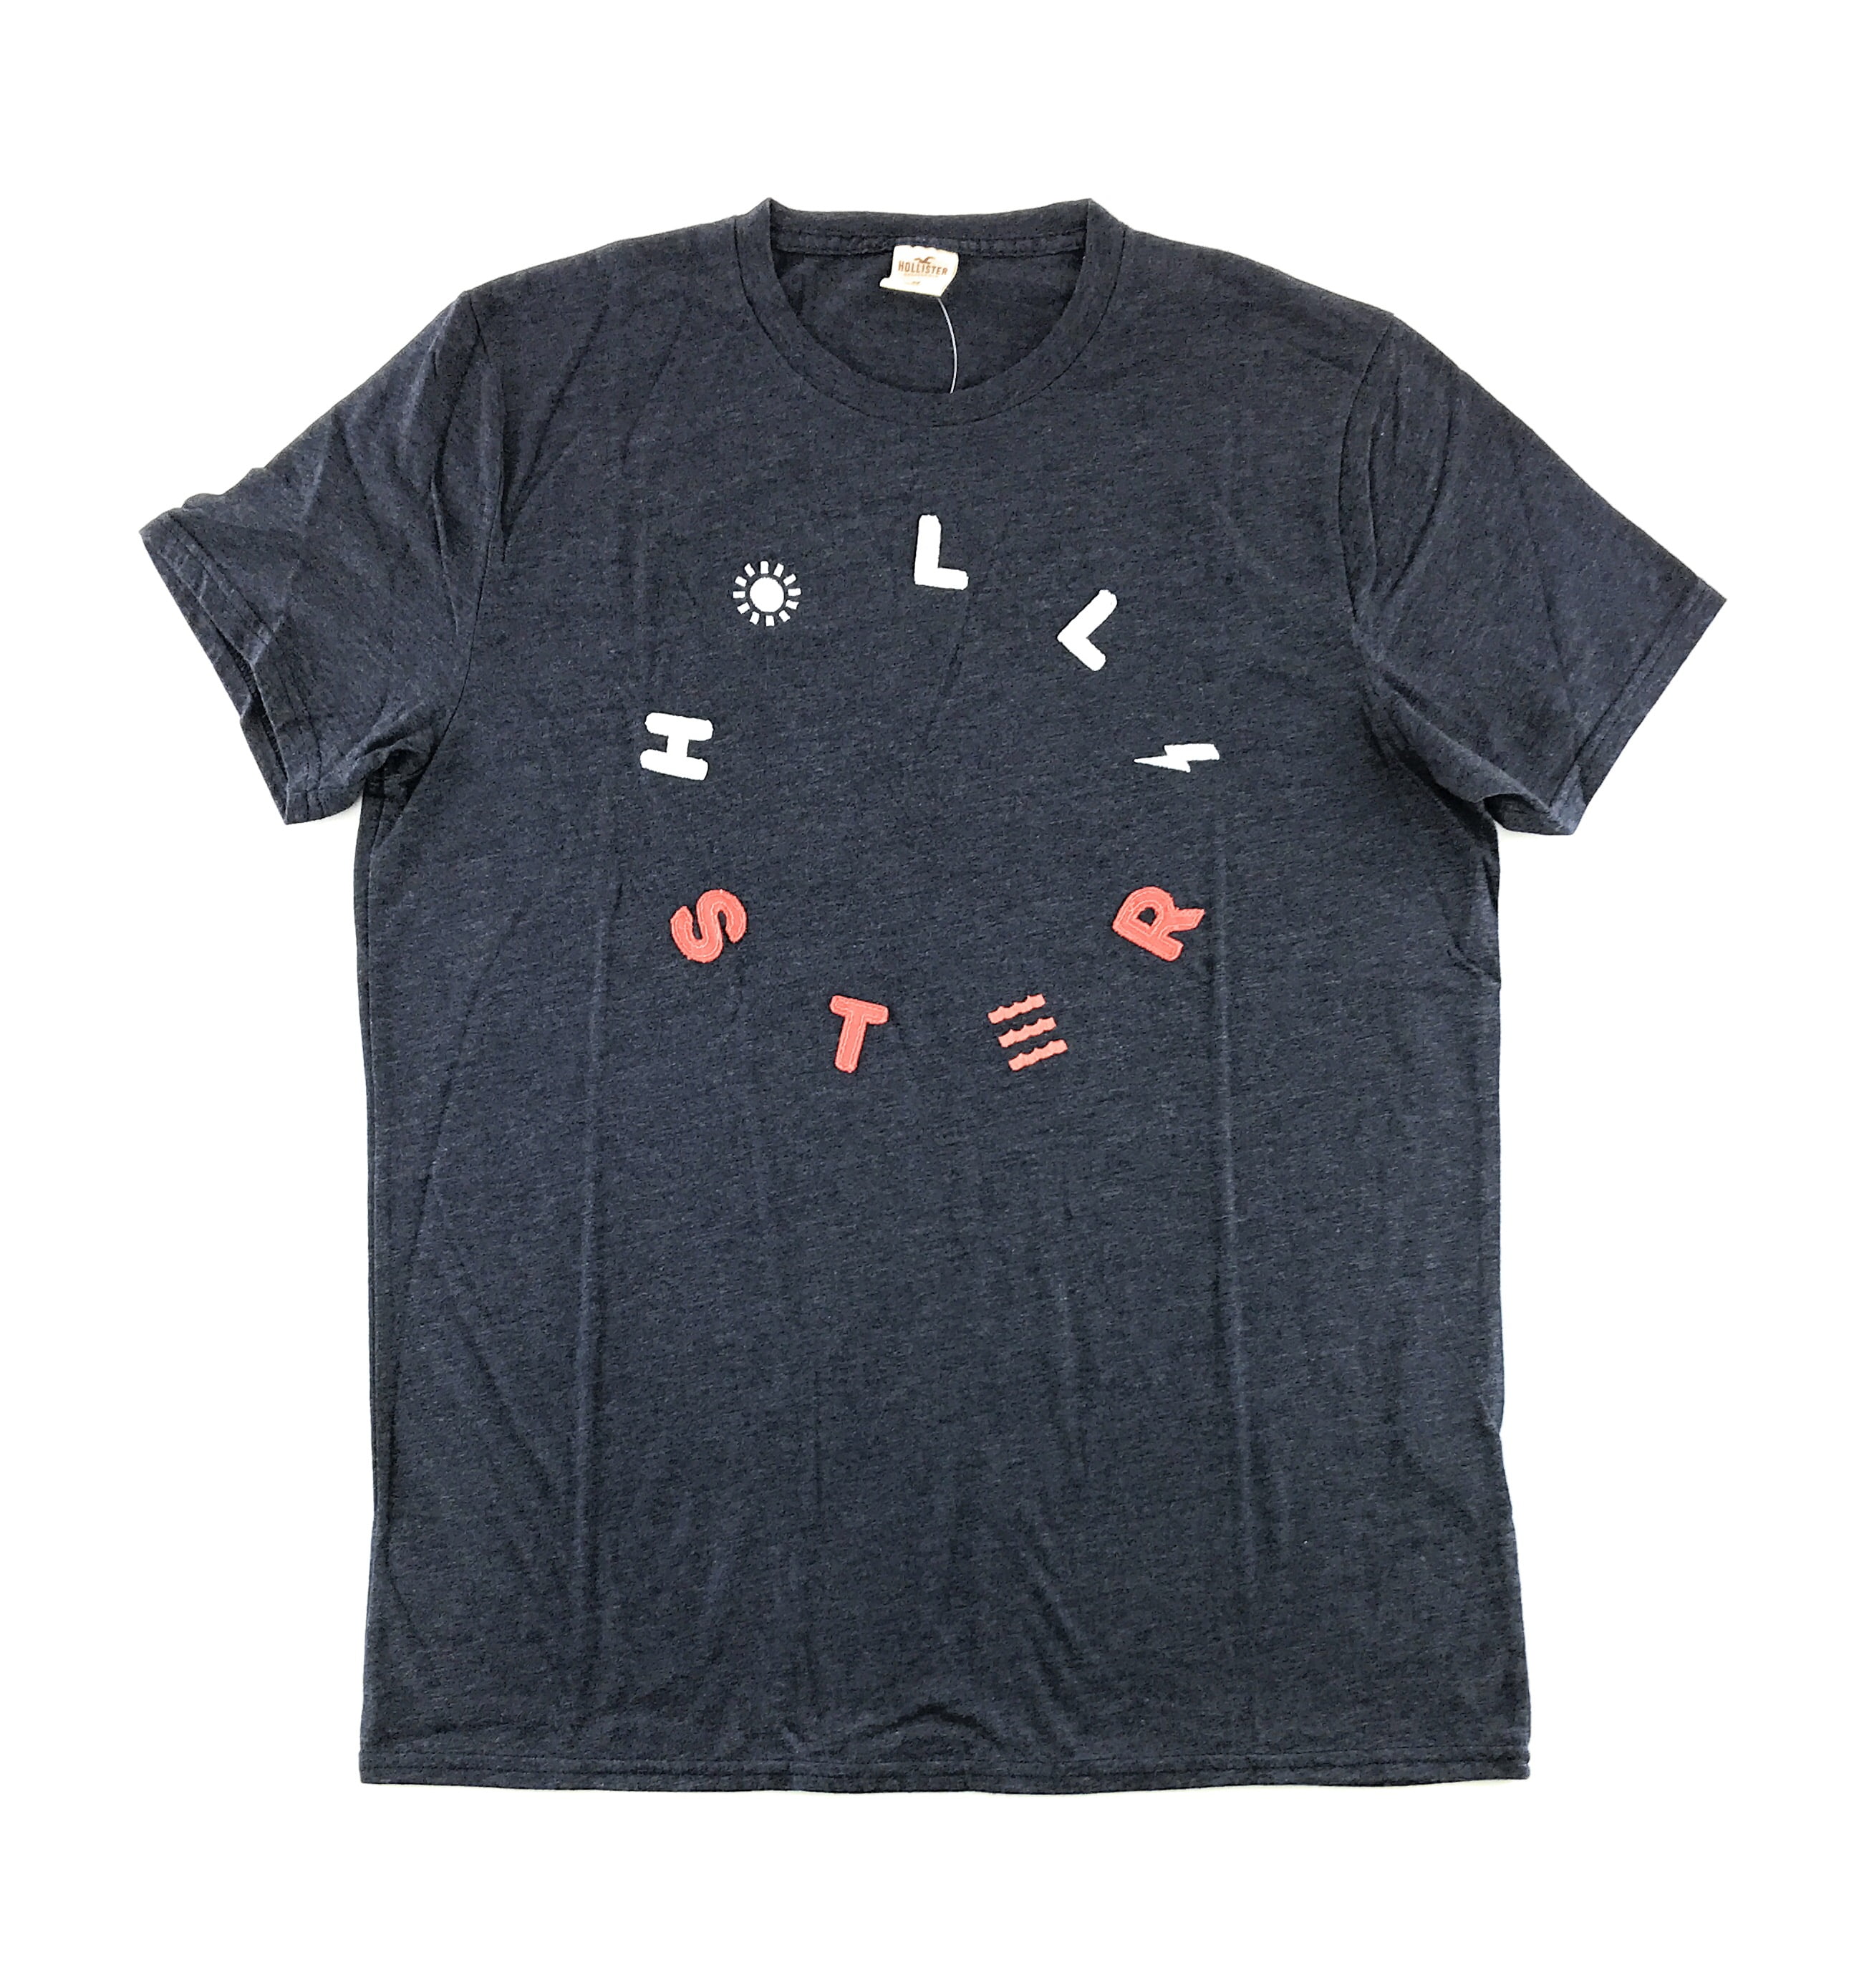 BEST SELLER - Hollister Merchandise T-Shirt boys animal print shirt custom t  shirts hippie clothes men